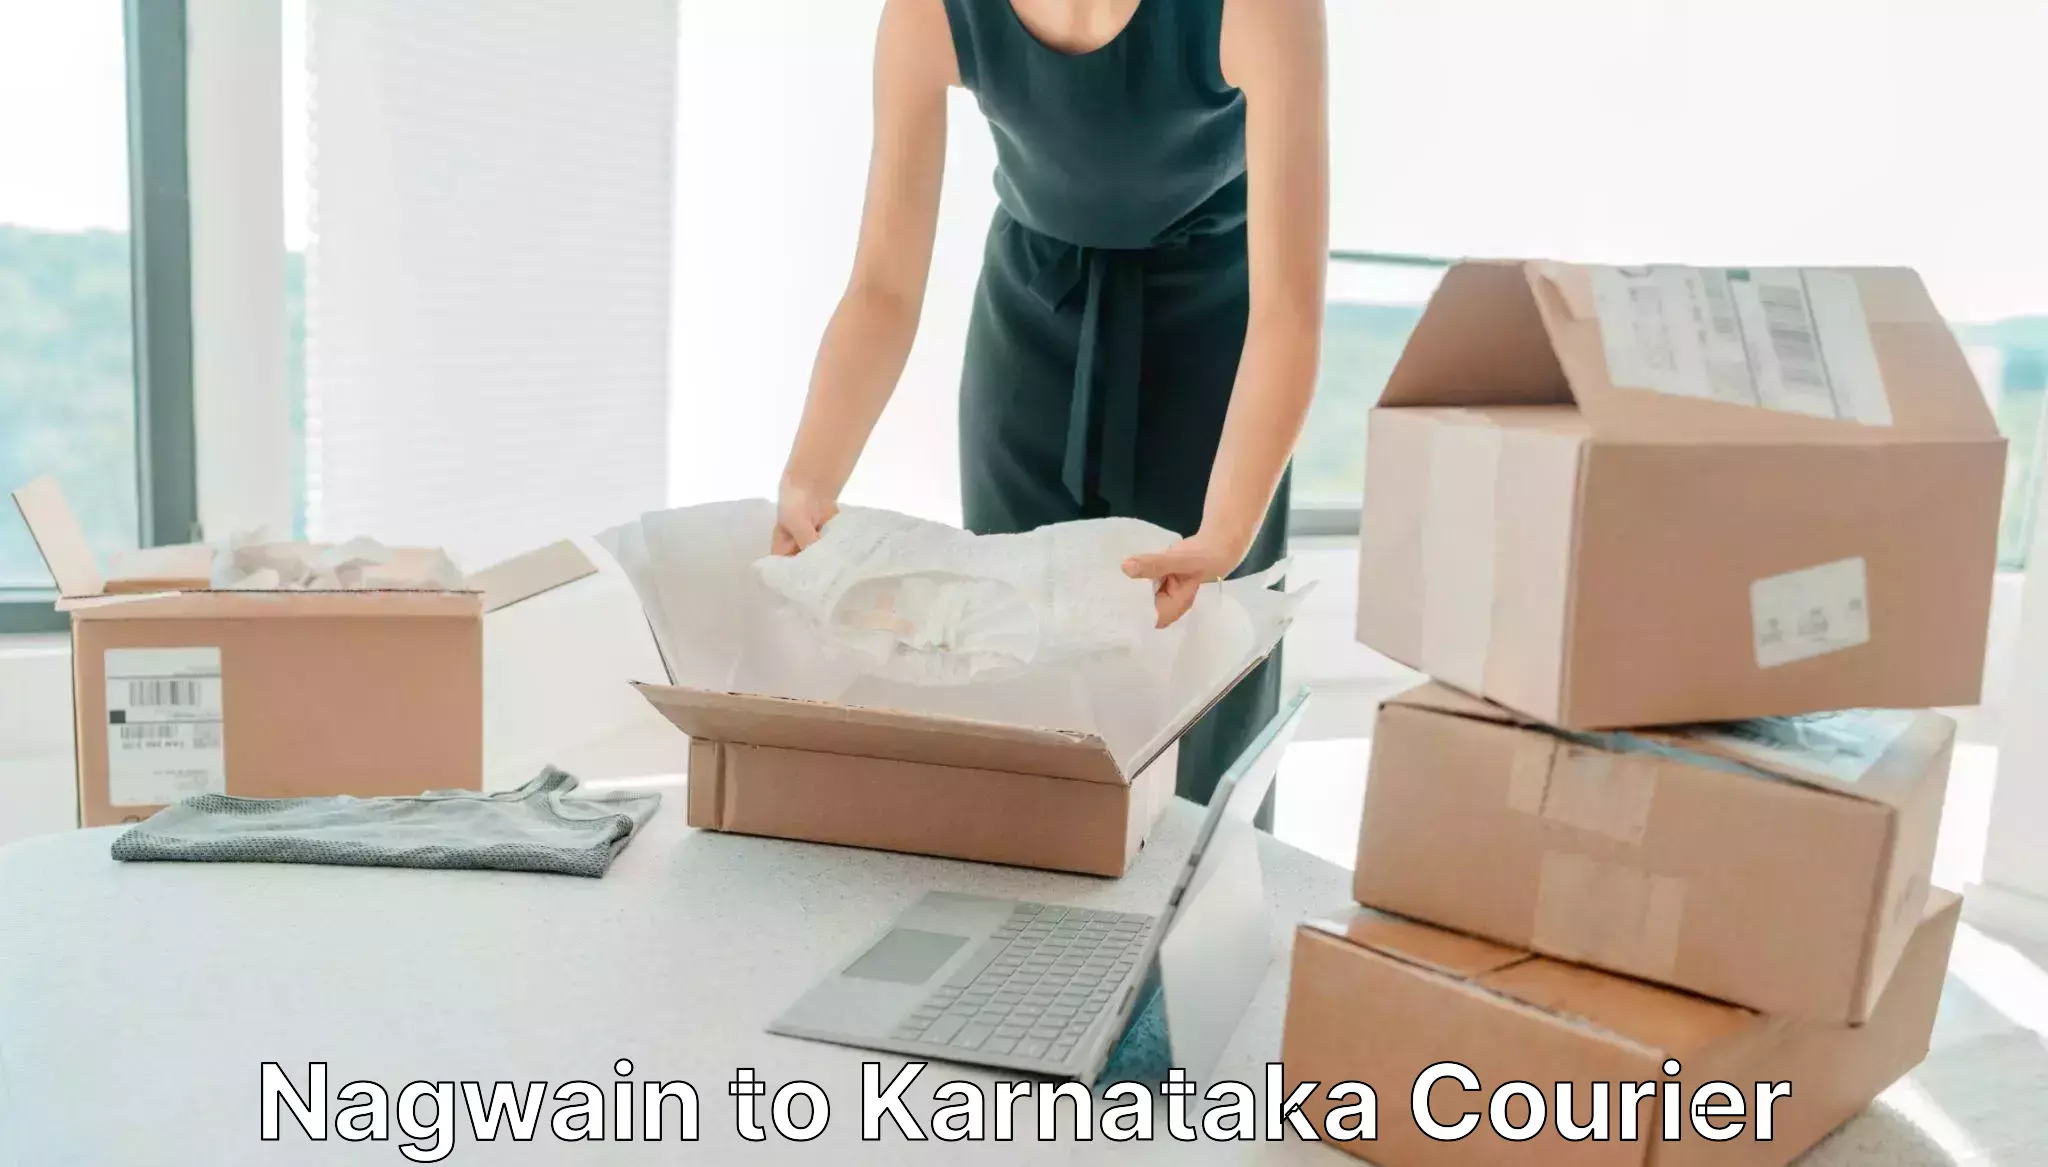 24/7 courier service Nagwain to Karnataka